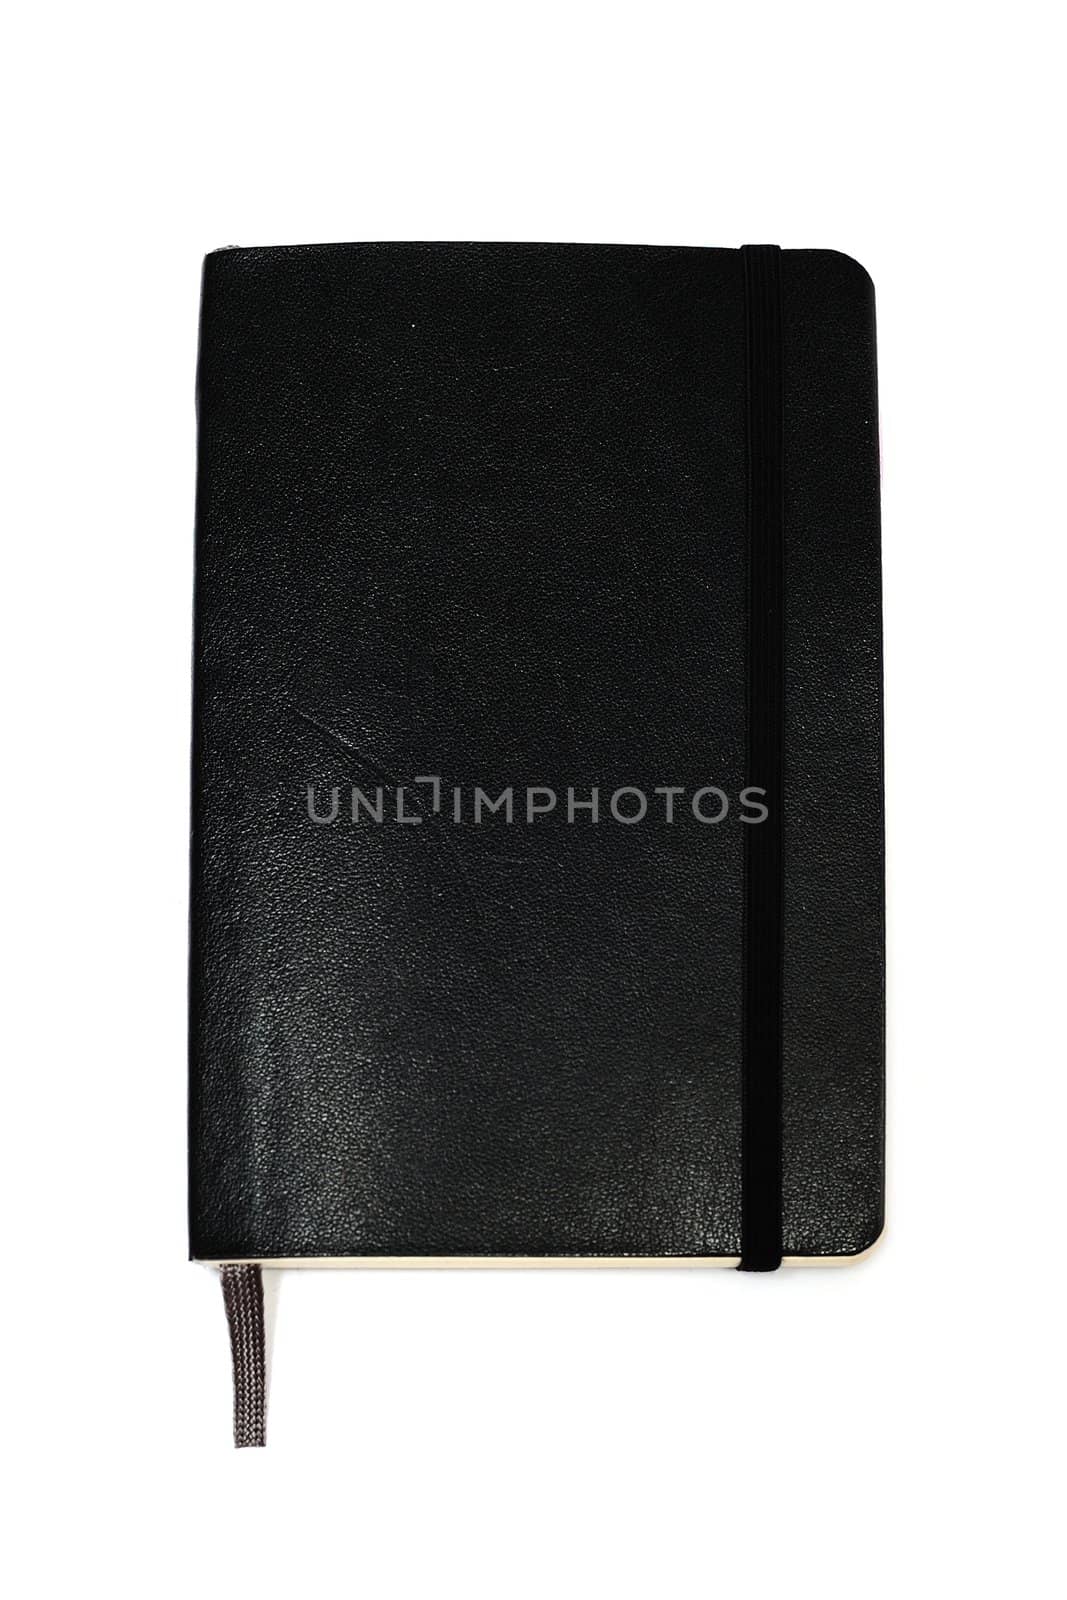 Black notebook by velkol